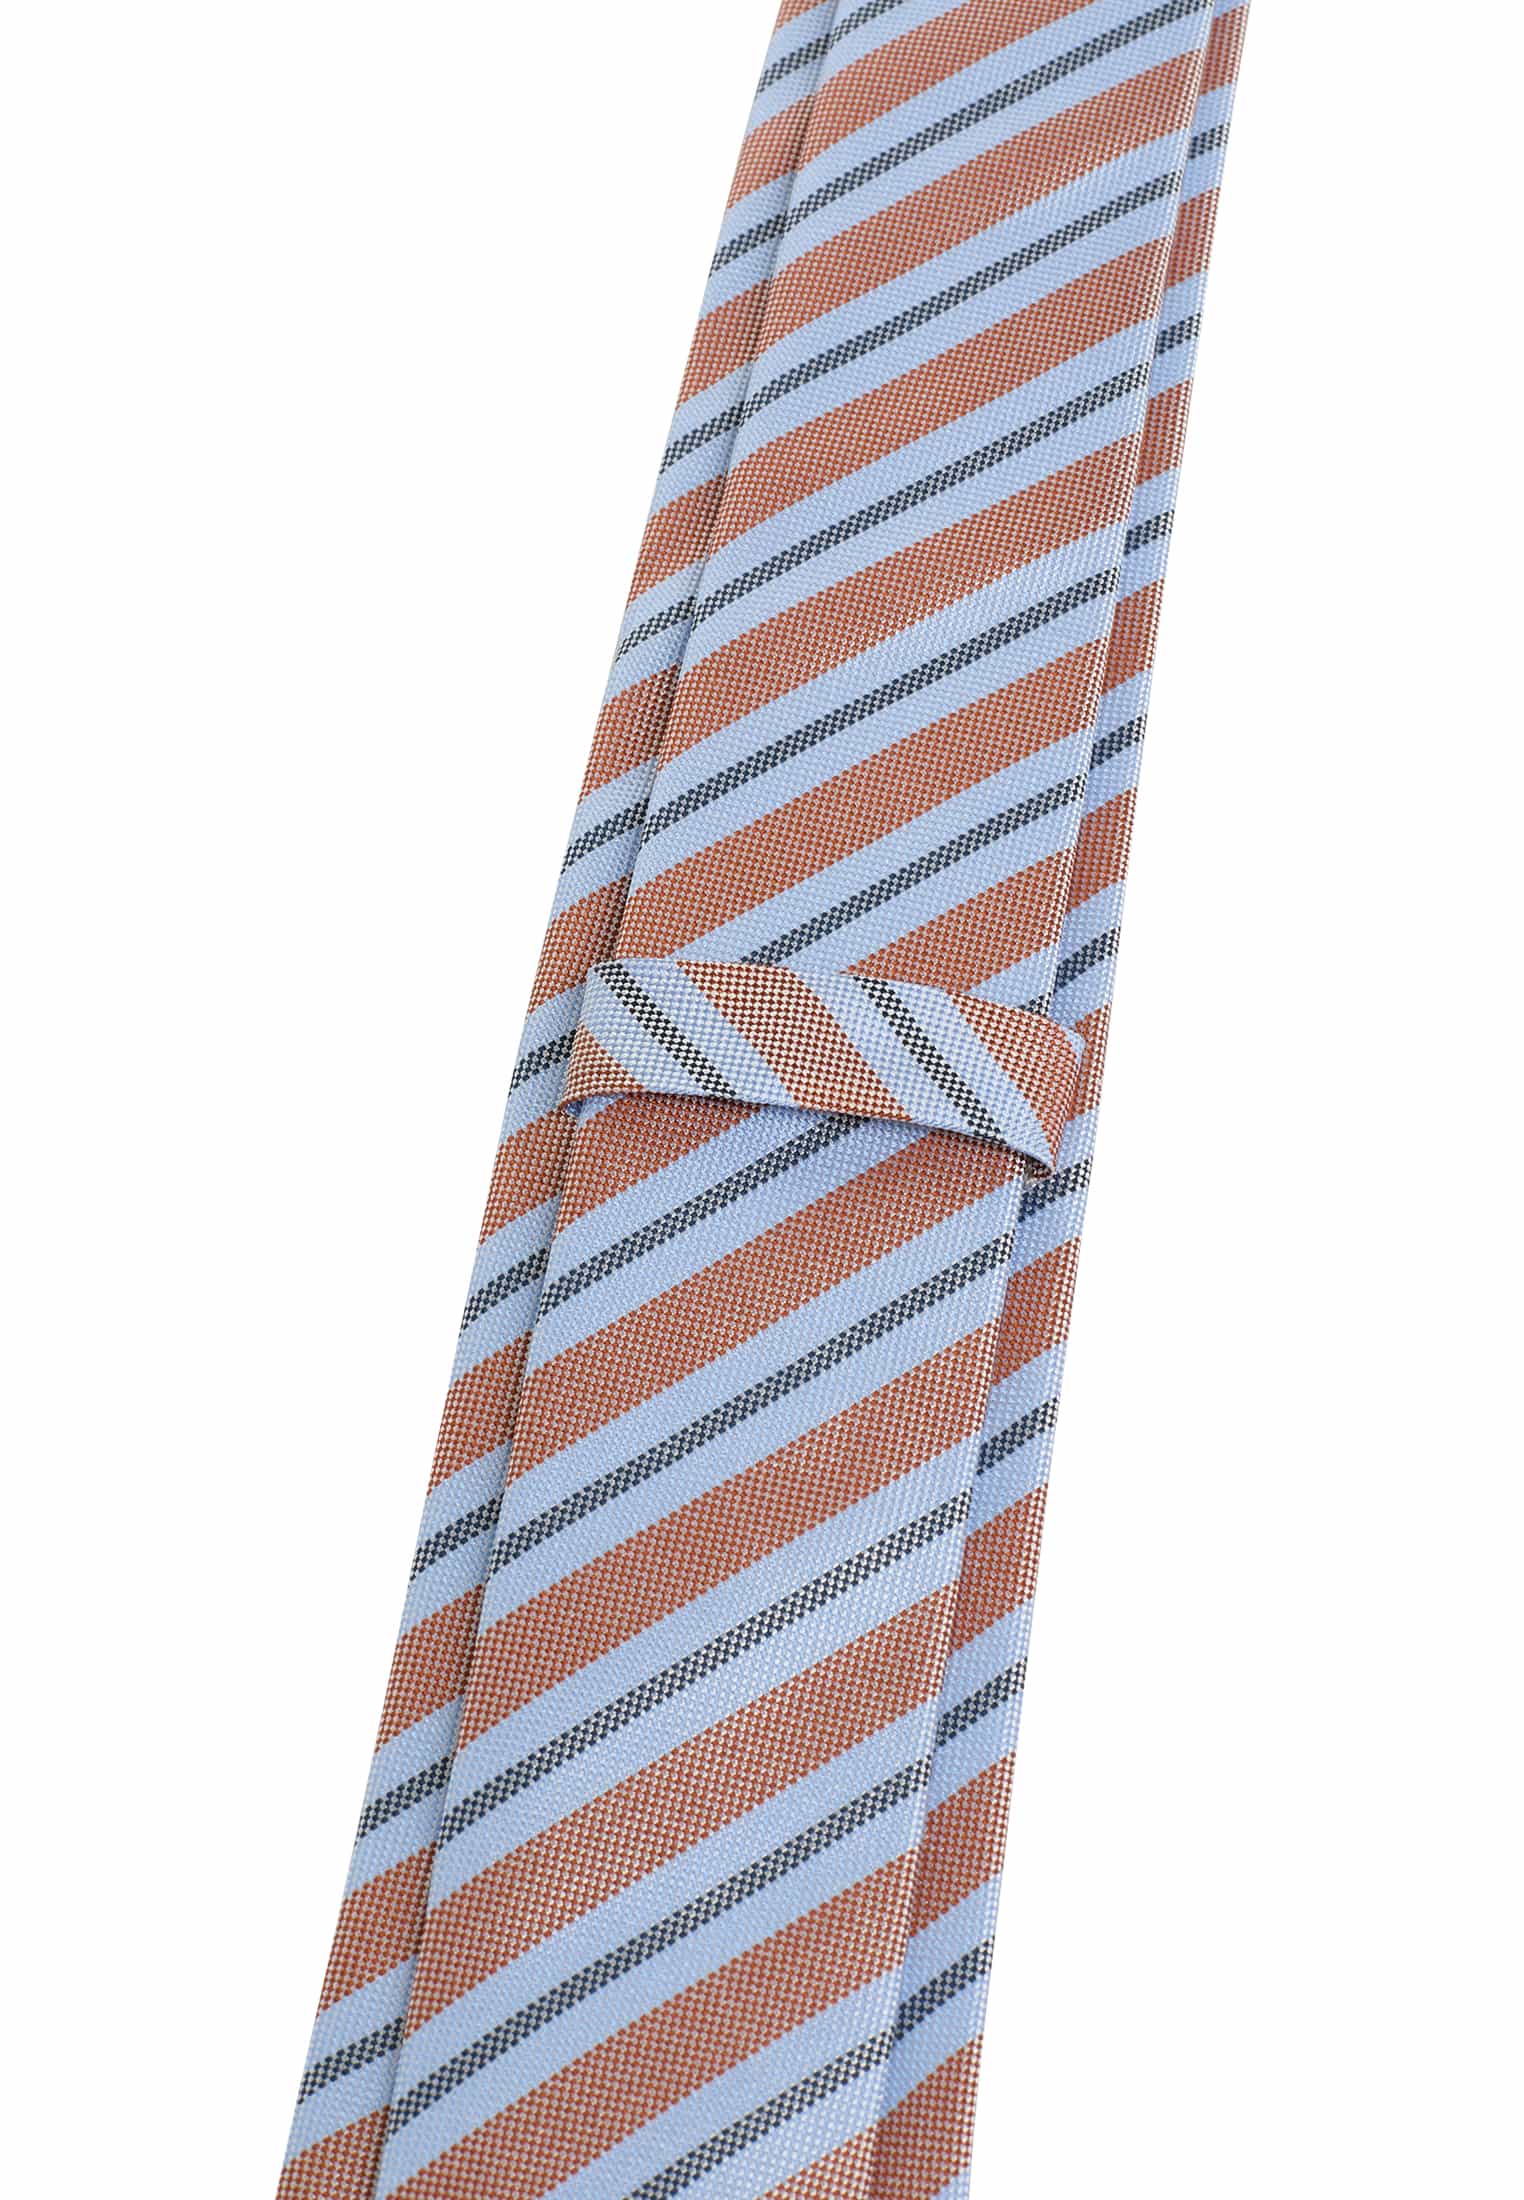 Krawatte in hellblau/orange 1AC02000-81-33-142 gestreift | | 142 hellblau/orange 